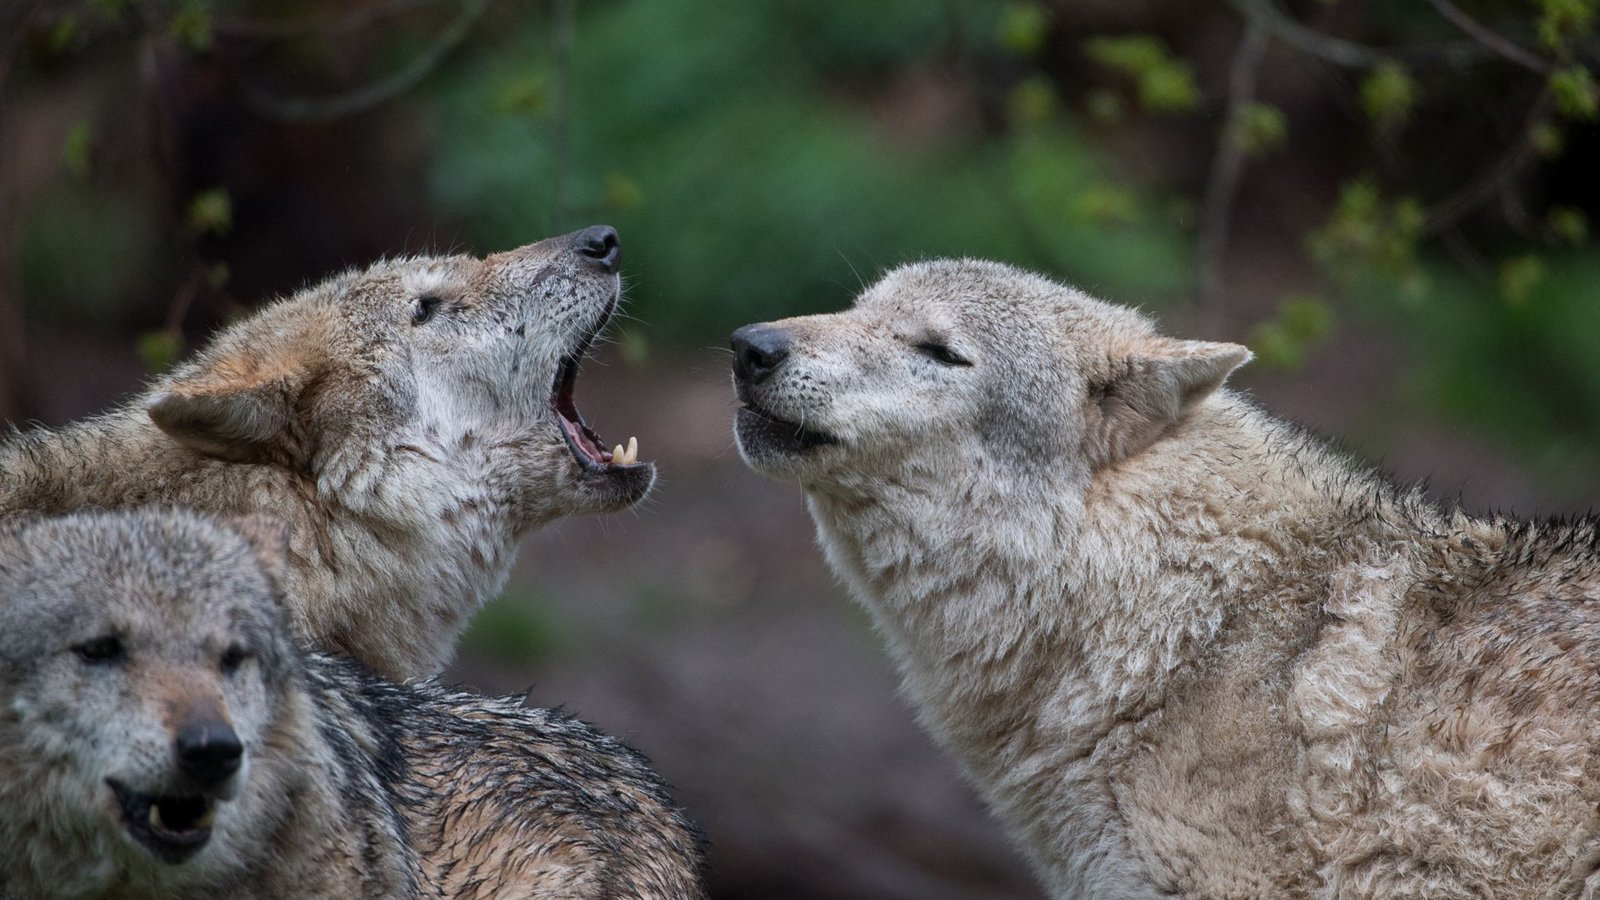 Europäische Wölfe heulen im Wildparadies Tripsdrill im baden-württembergischen Cleebronn.  Derzeit gelten nur noch drei Wölfe in Baden-Württemberg als sesshaft. (Symbolbild)Foto: dpa/Sebastian Gollnow